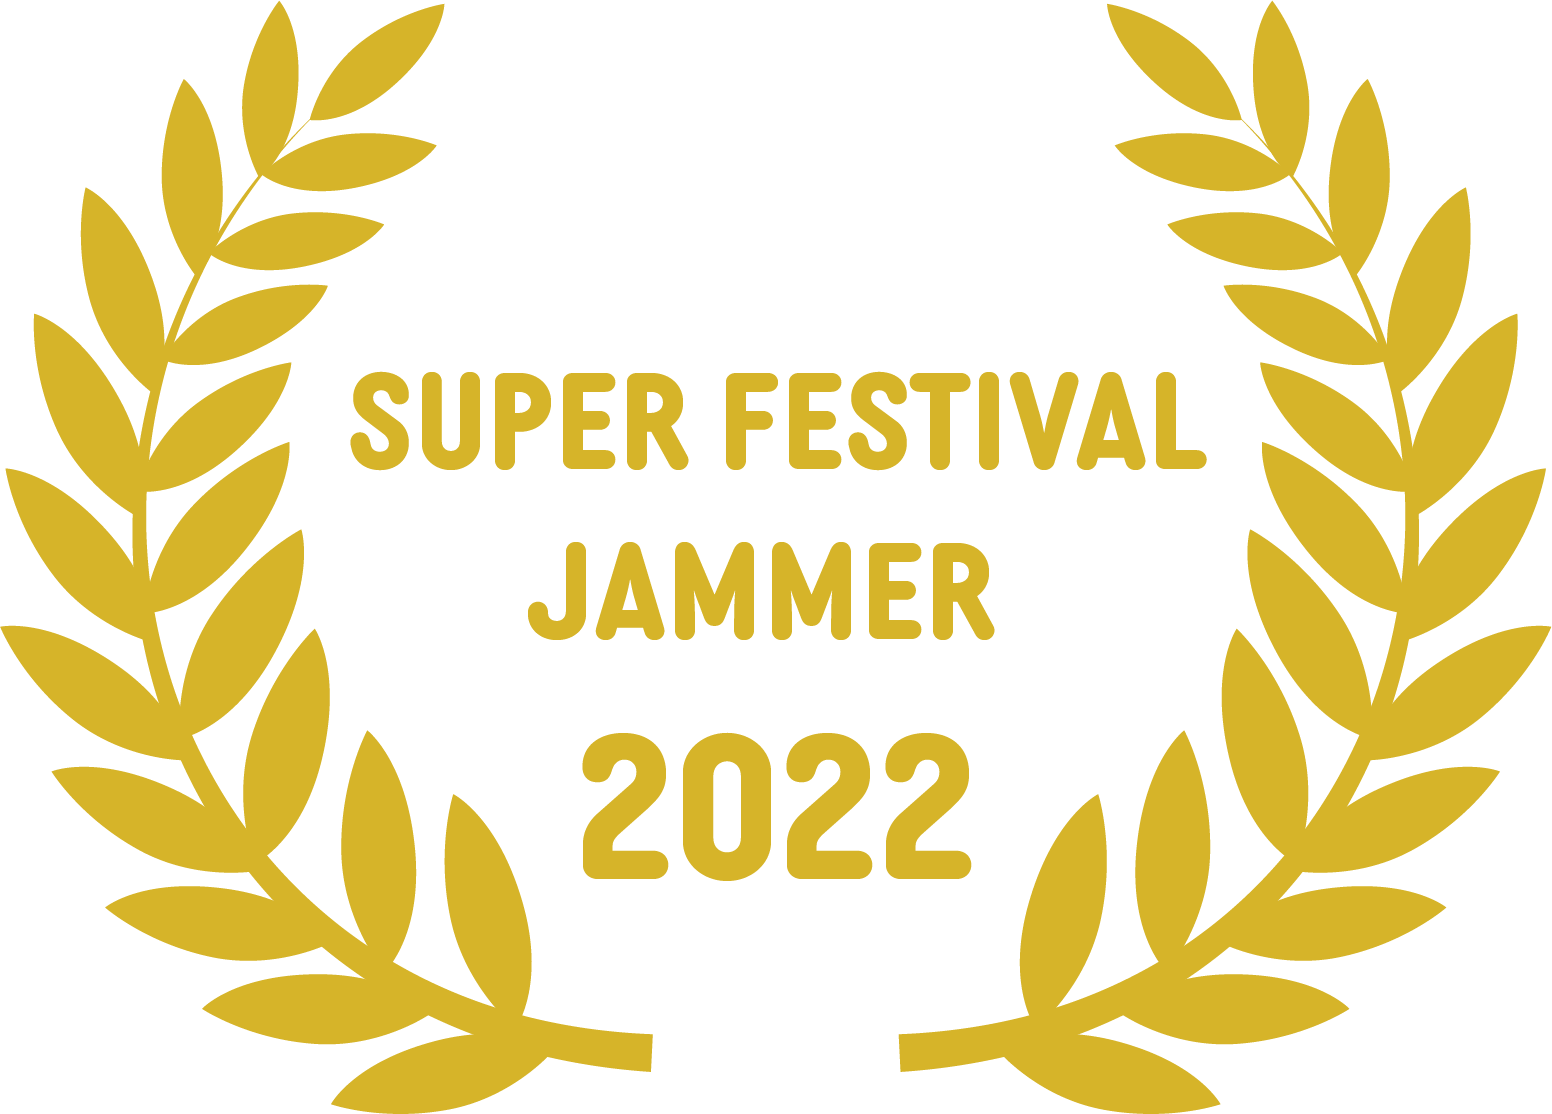 Super Festival Jammer 2022